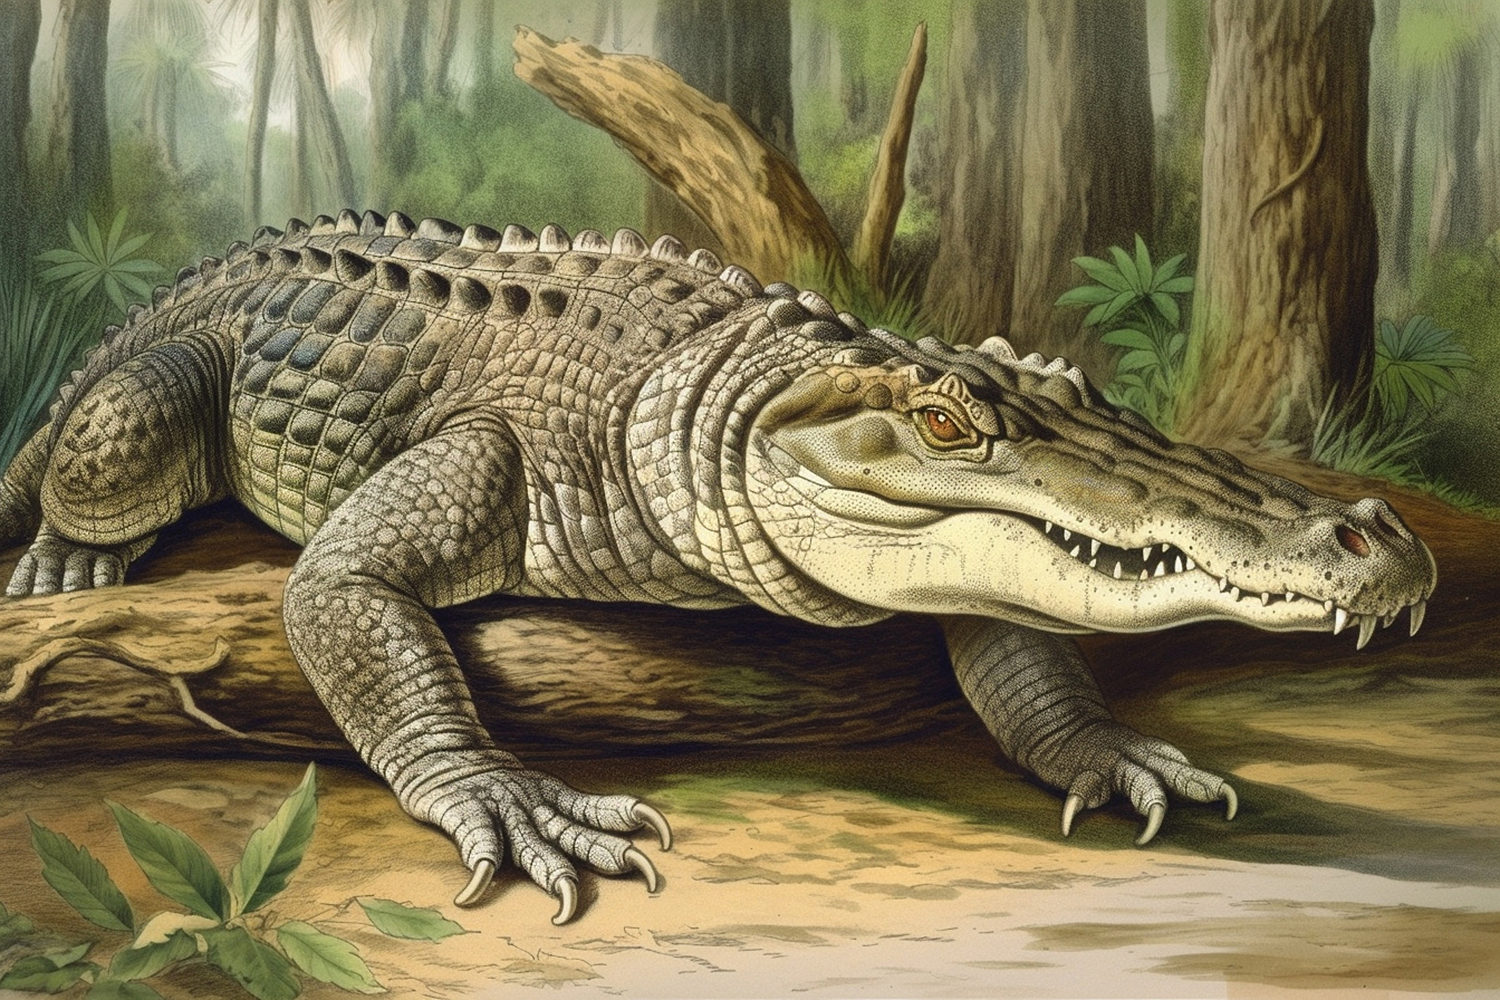 Crocodile on log